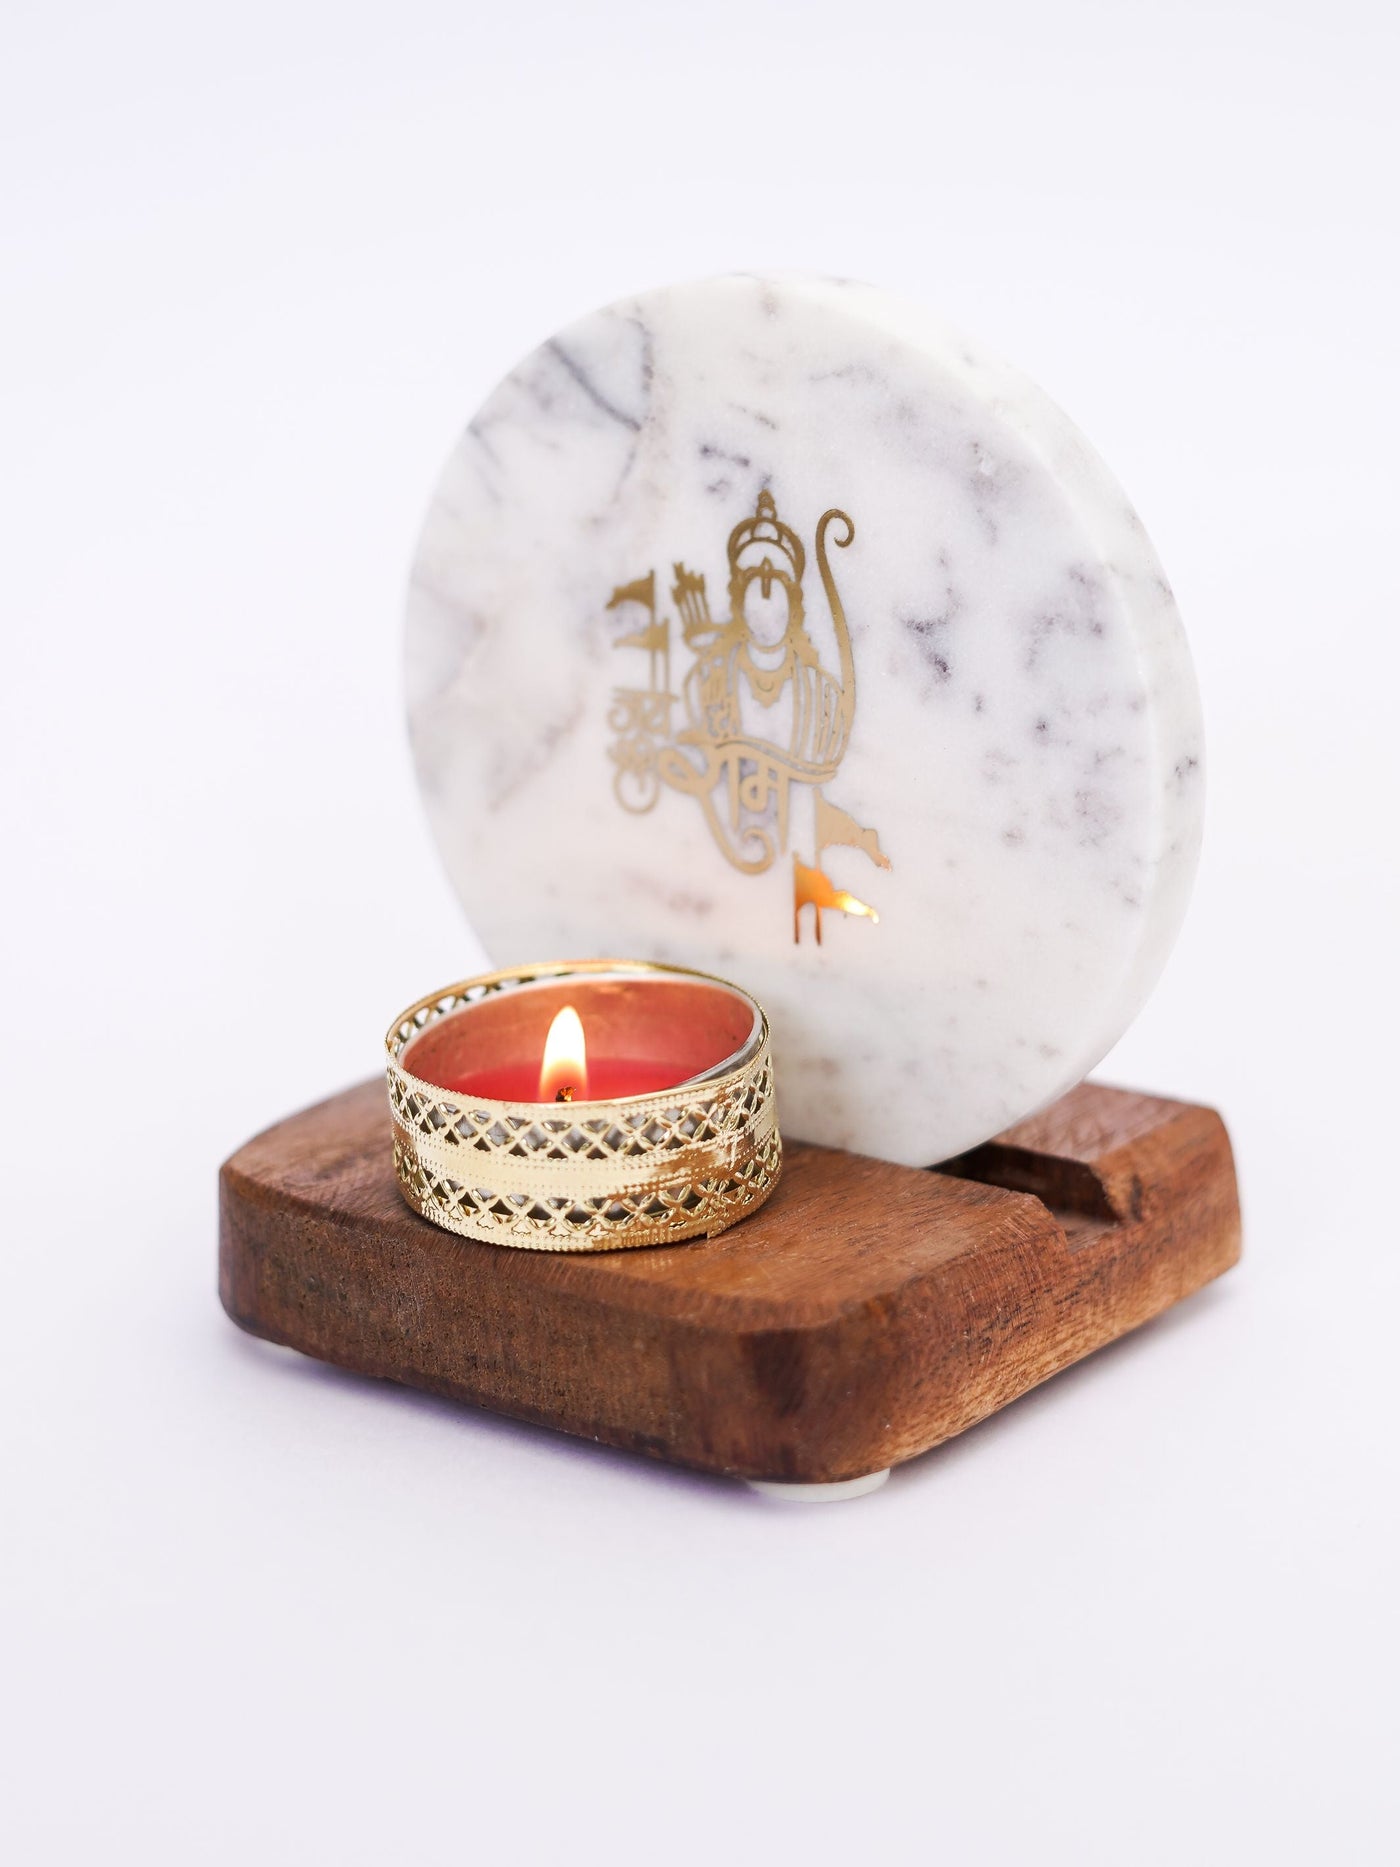 Tea Light Holder - Marble & Wood with Jai Shree Ram